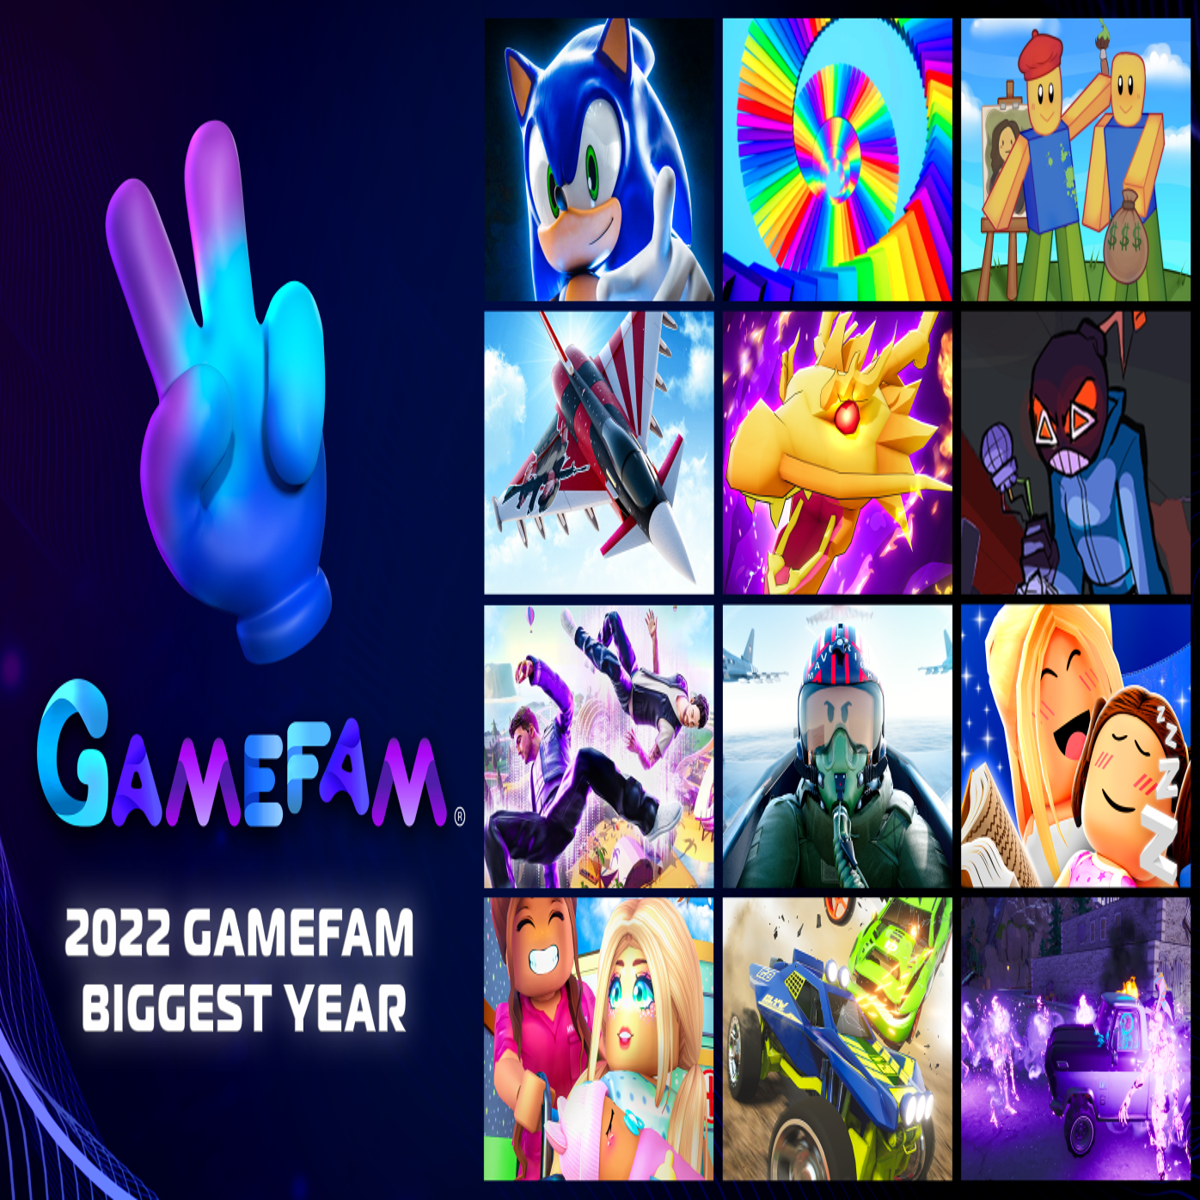 Gamefam